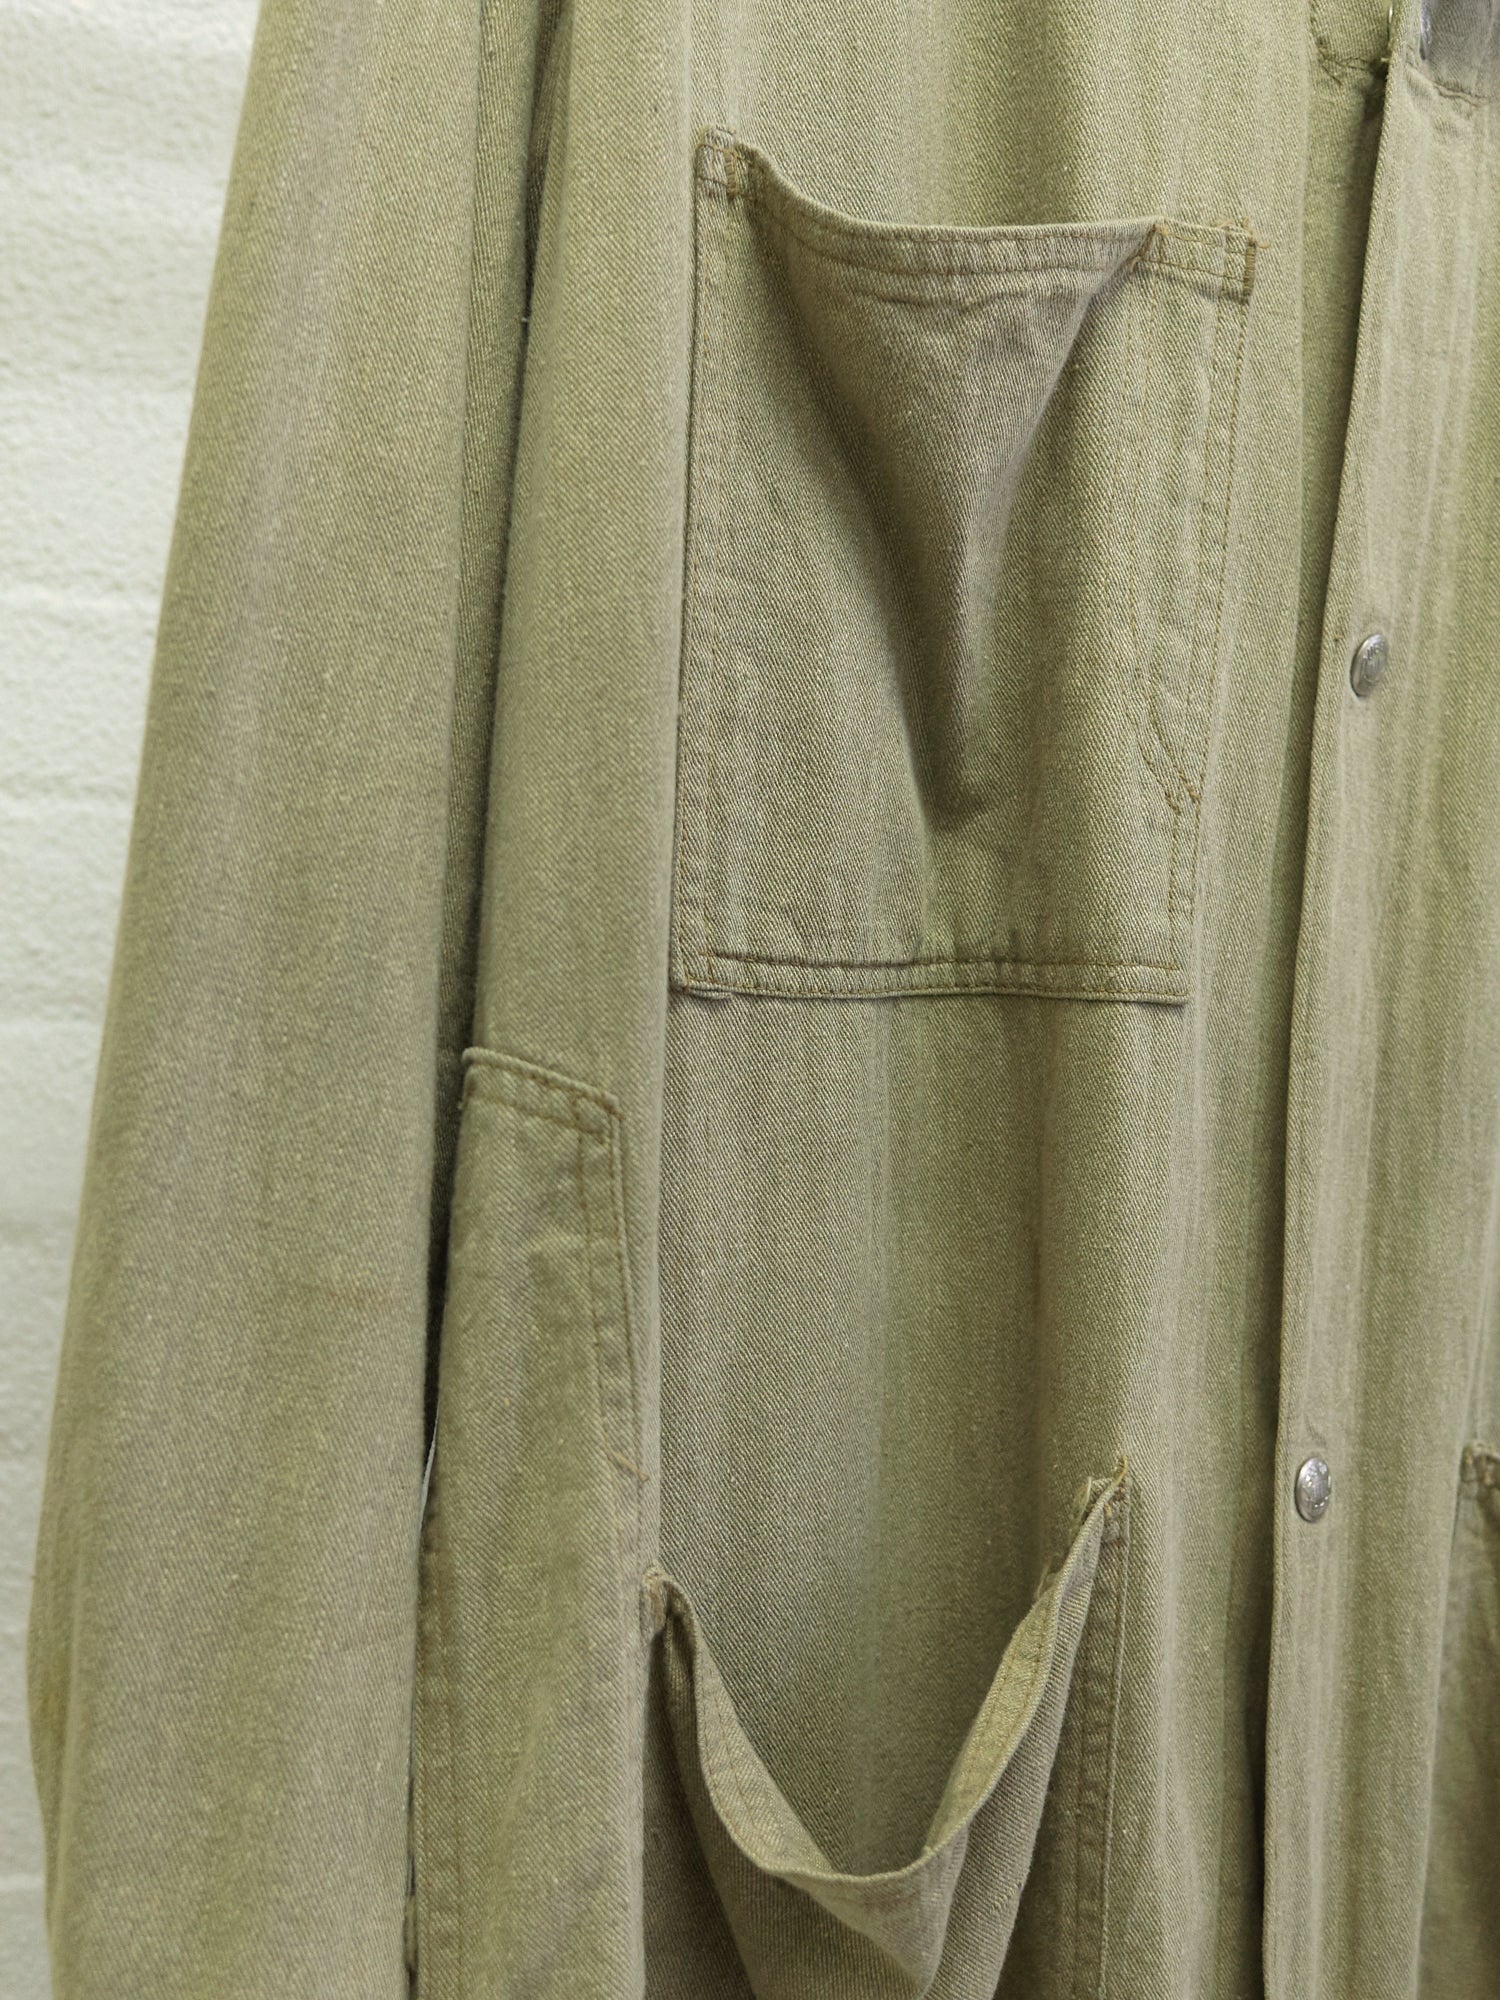 Dubbleware 1930s-40s beige cotton multi pocket chore coat - size M L